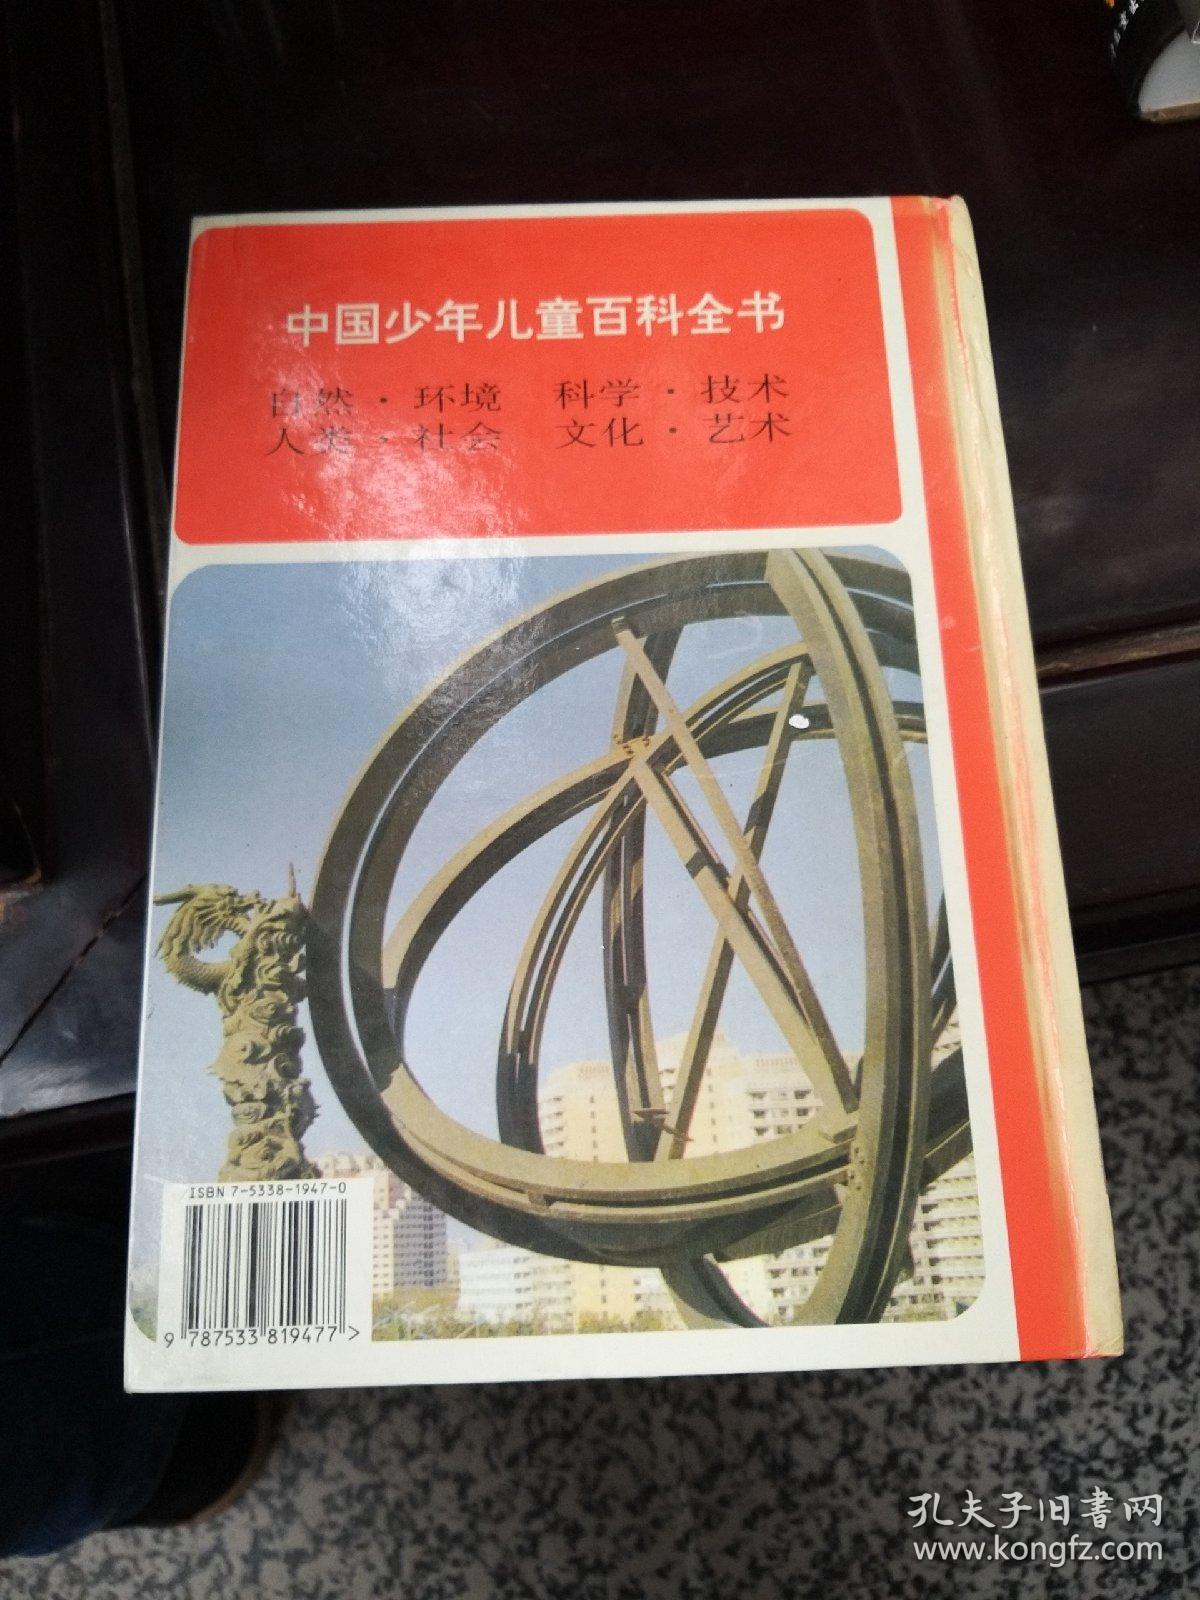 中国少年儿童百科全书四册全